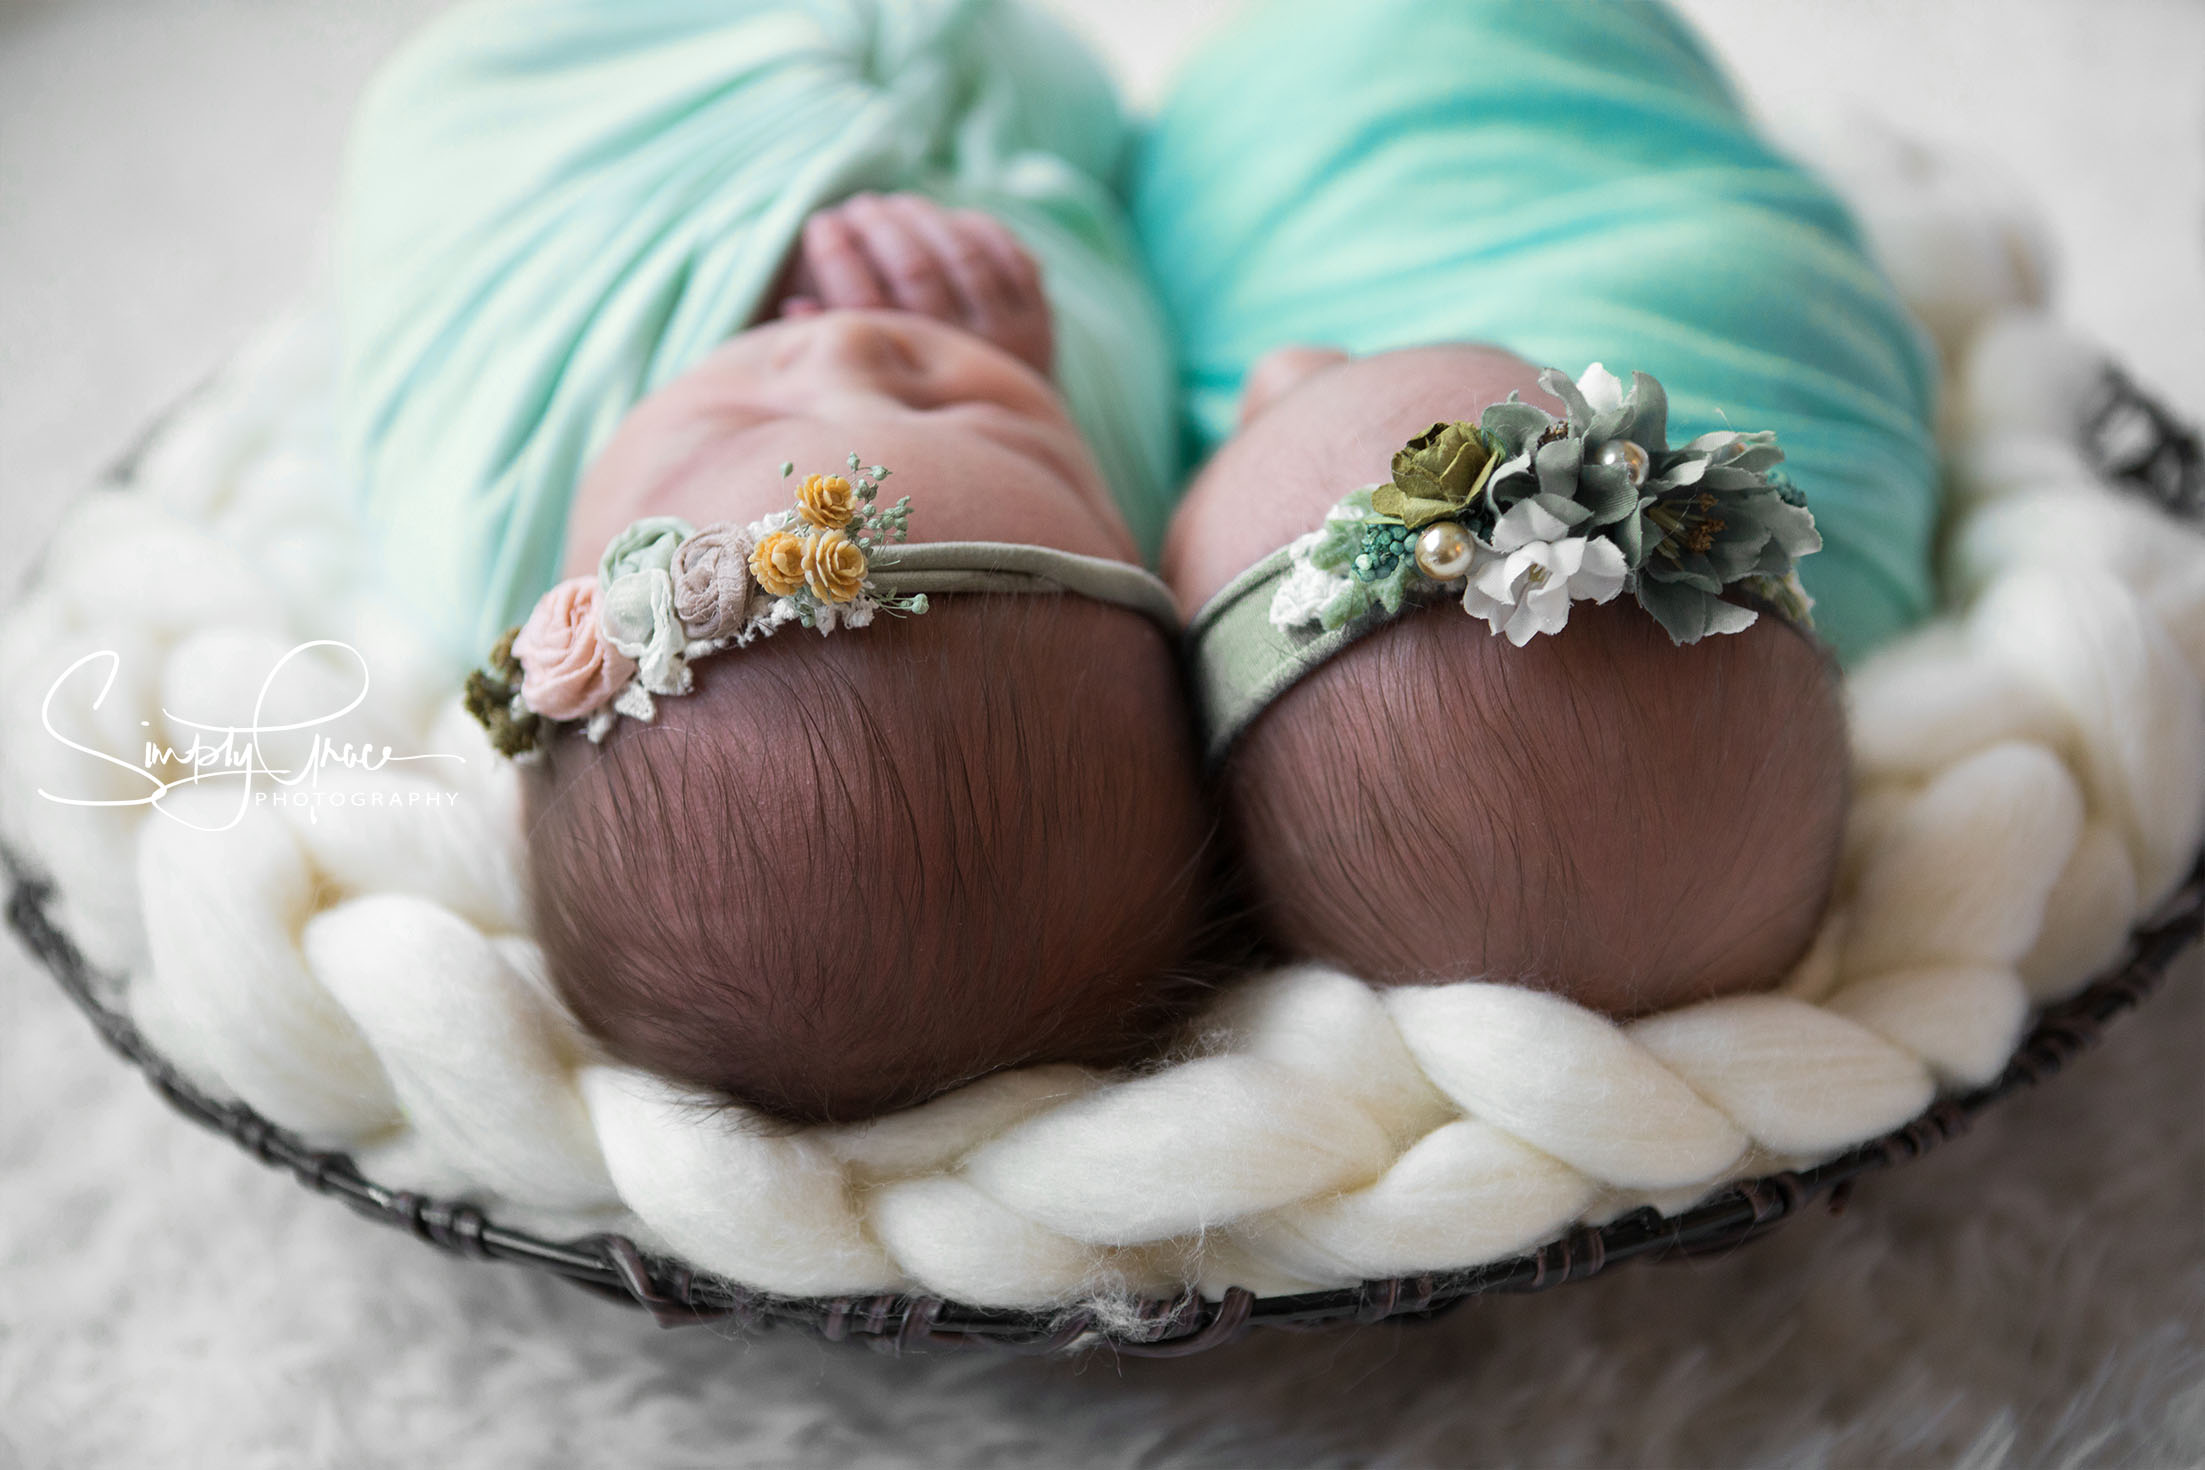 newborn twins in bowl